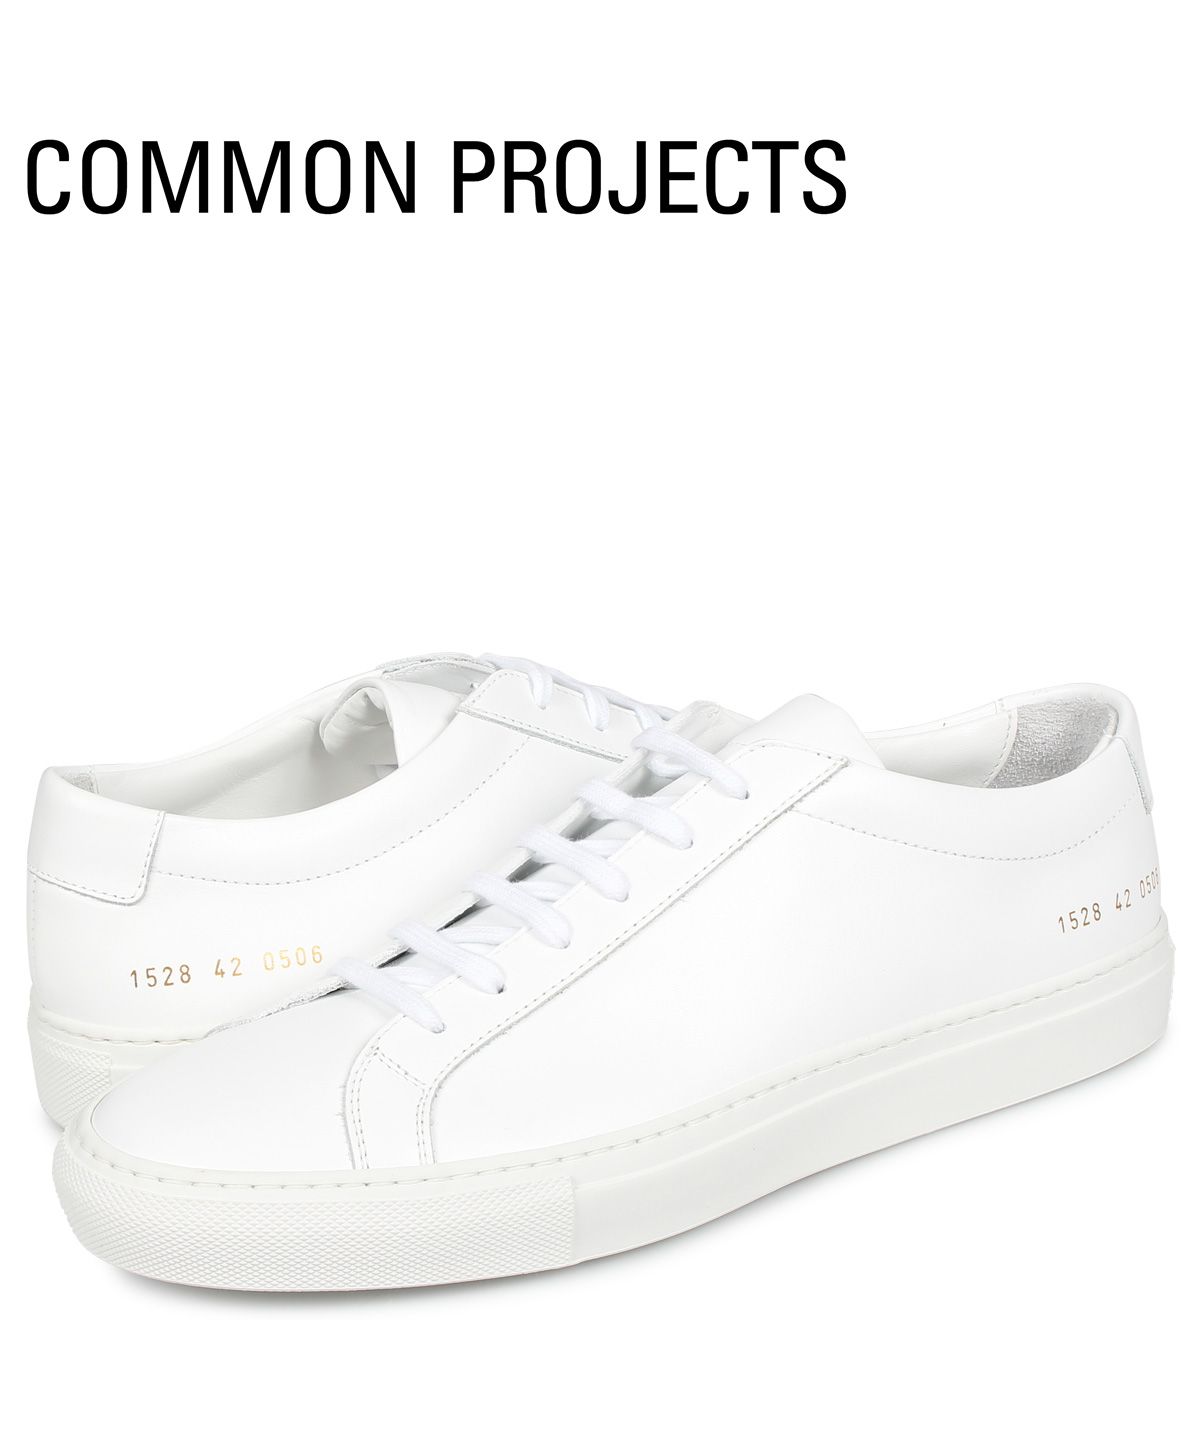 コモンプロジェクト Common Projects アキレス ロー スニーカー メンズ ACHILLES LOW ホワイト 白 1528－0506